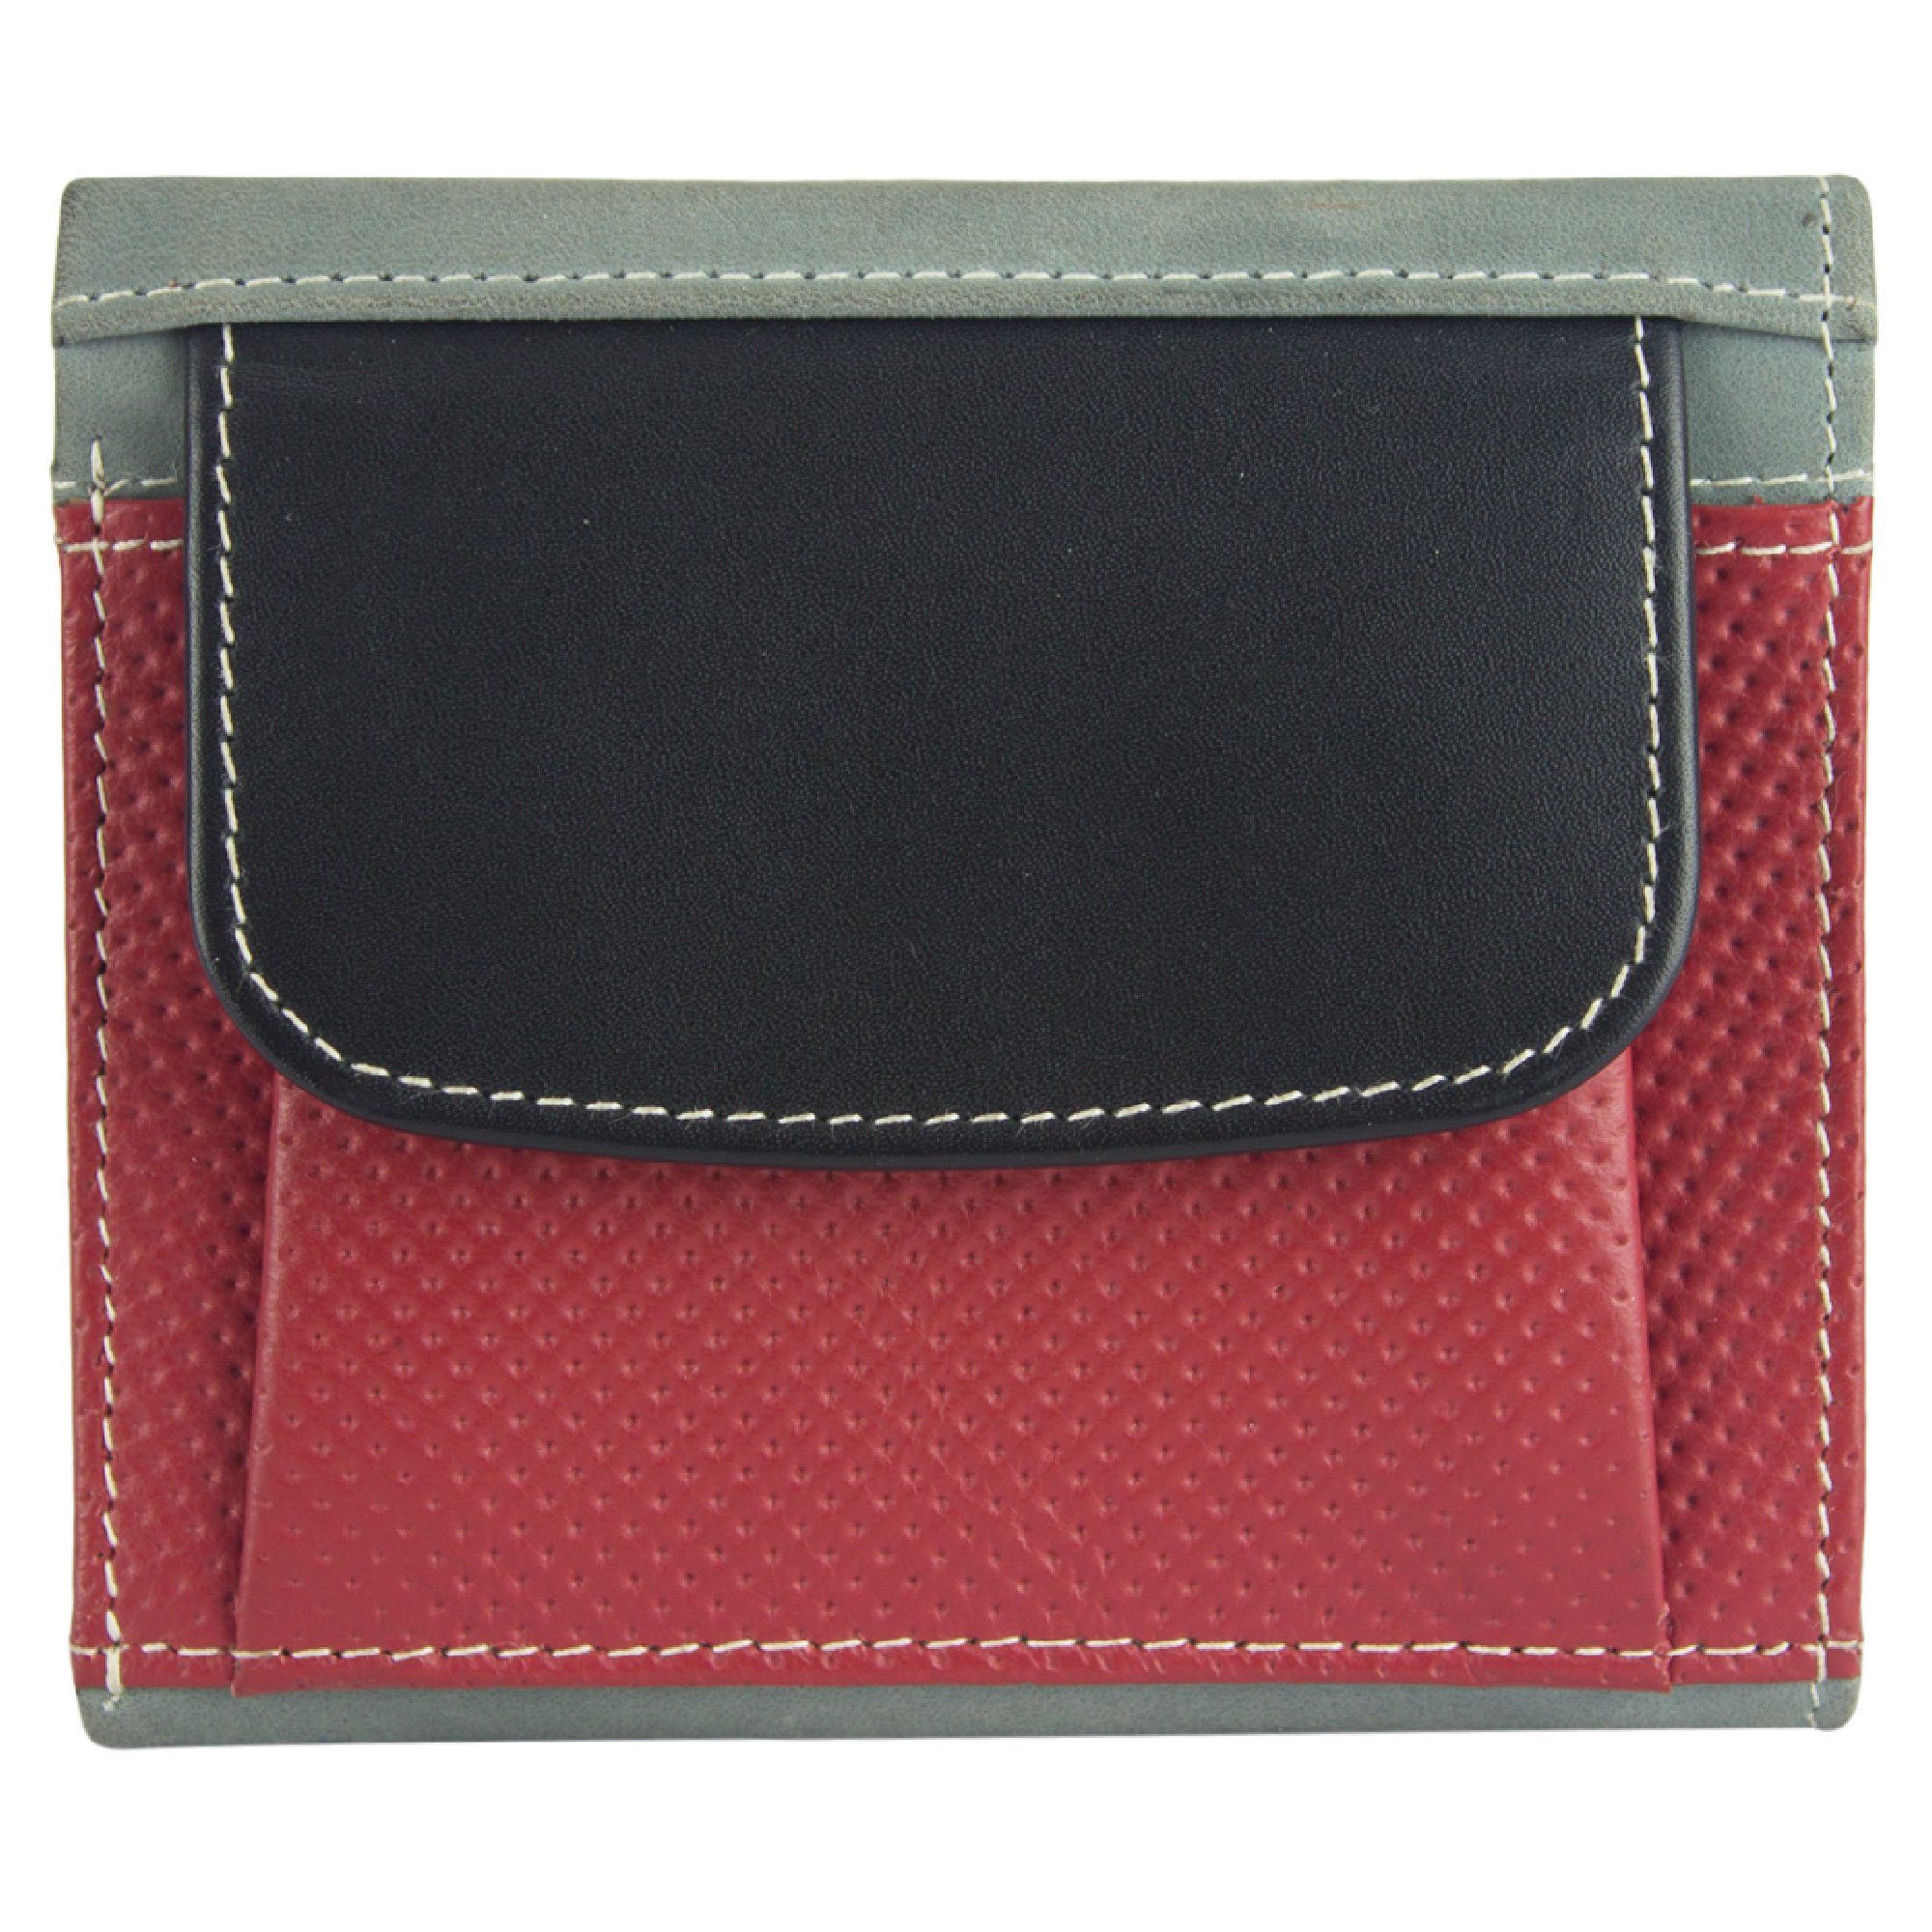 Brieftasche klein Leder, echt aus mit RFID-Schutz, Lederresten, grau/schwarz/rot Geldbörse Sunsa recycelten Damen, Portemonnaie Leder echt Geldbeutel Unisex